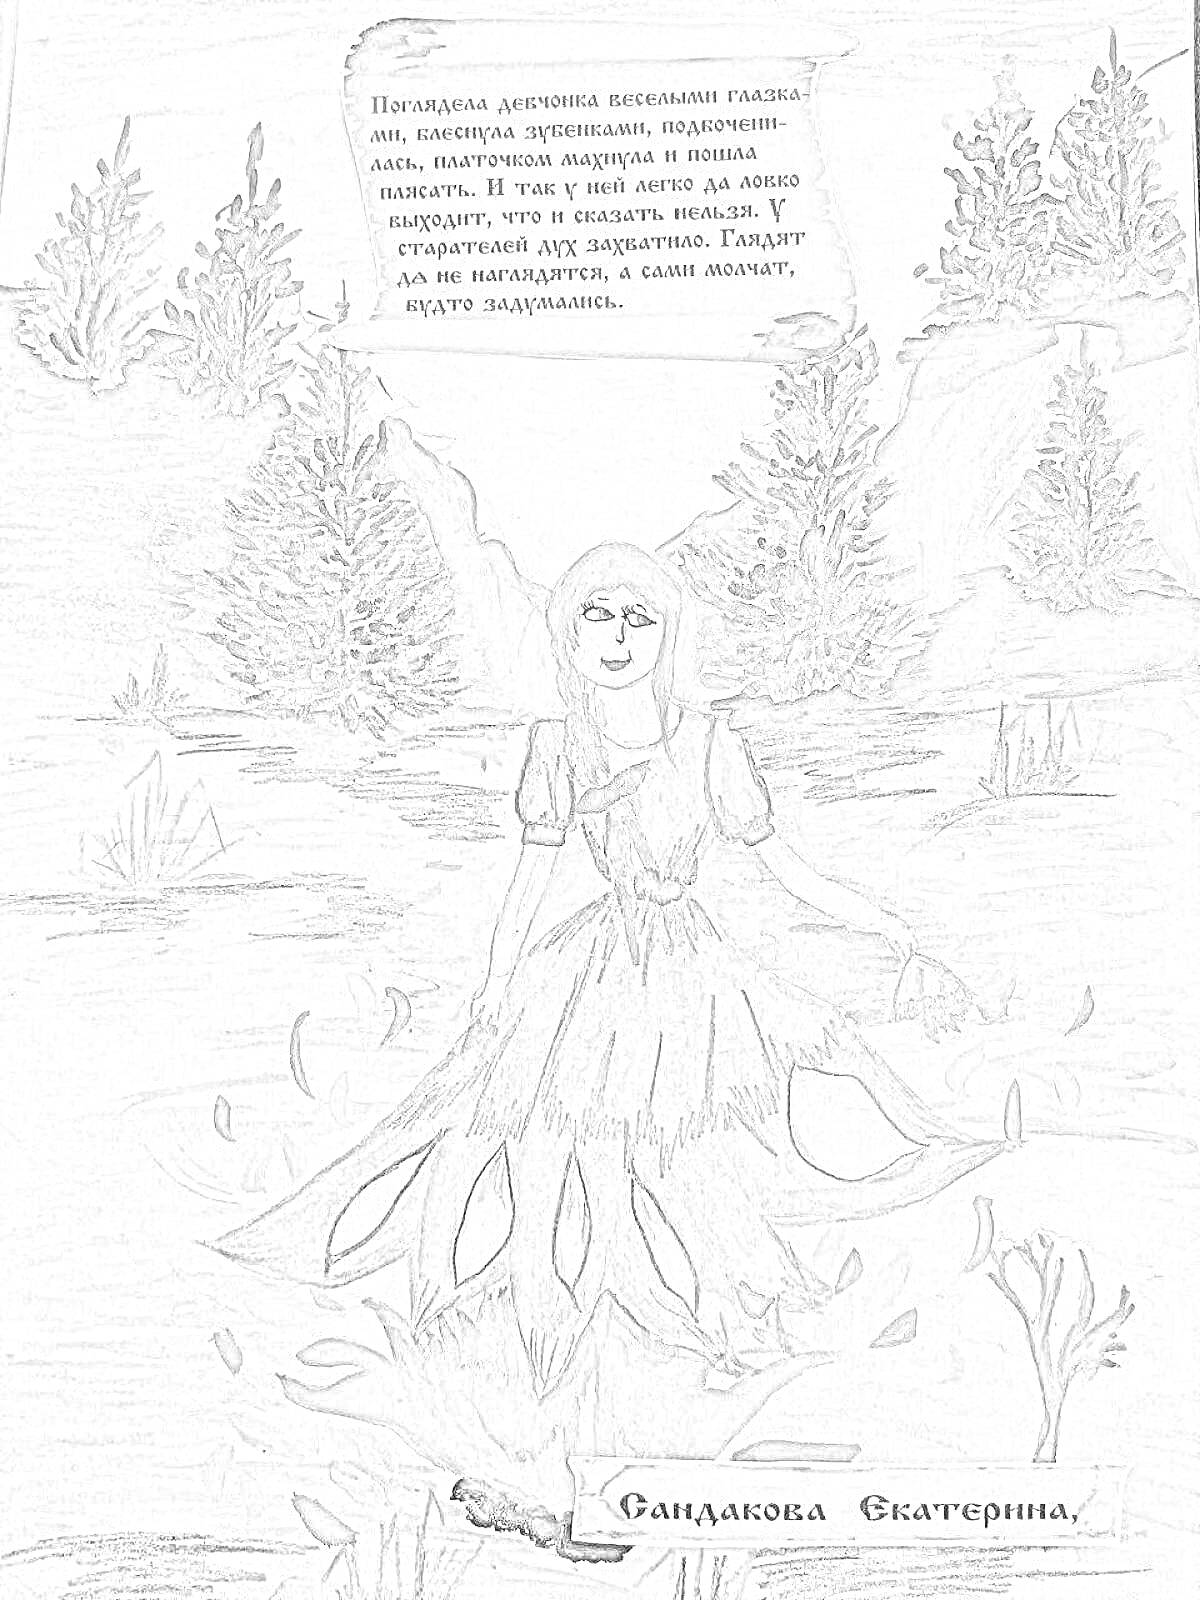 Раскраска Девушка в платье среди лесной природы с пламенем и цветами, текст в верхней части картинки